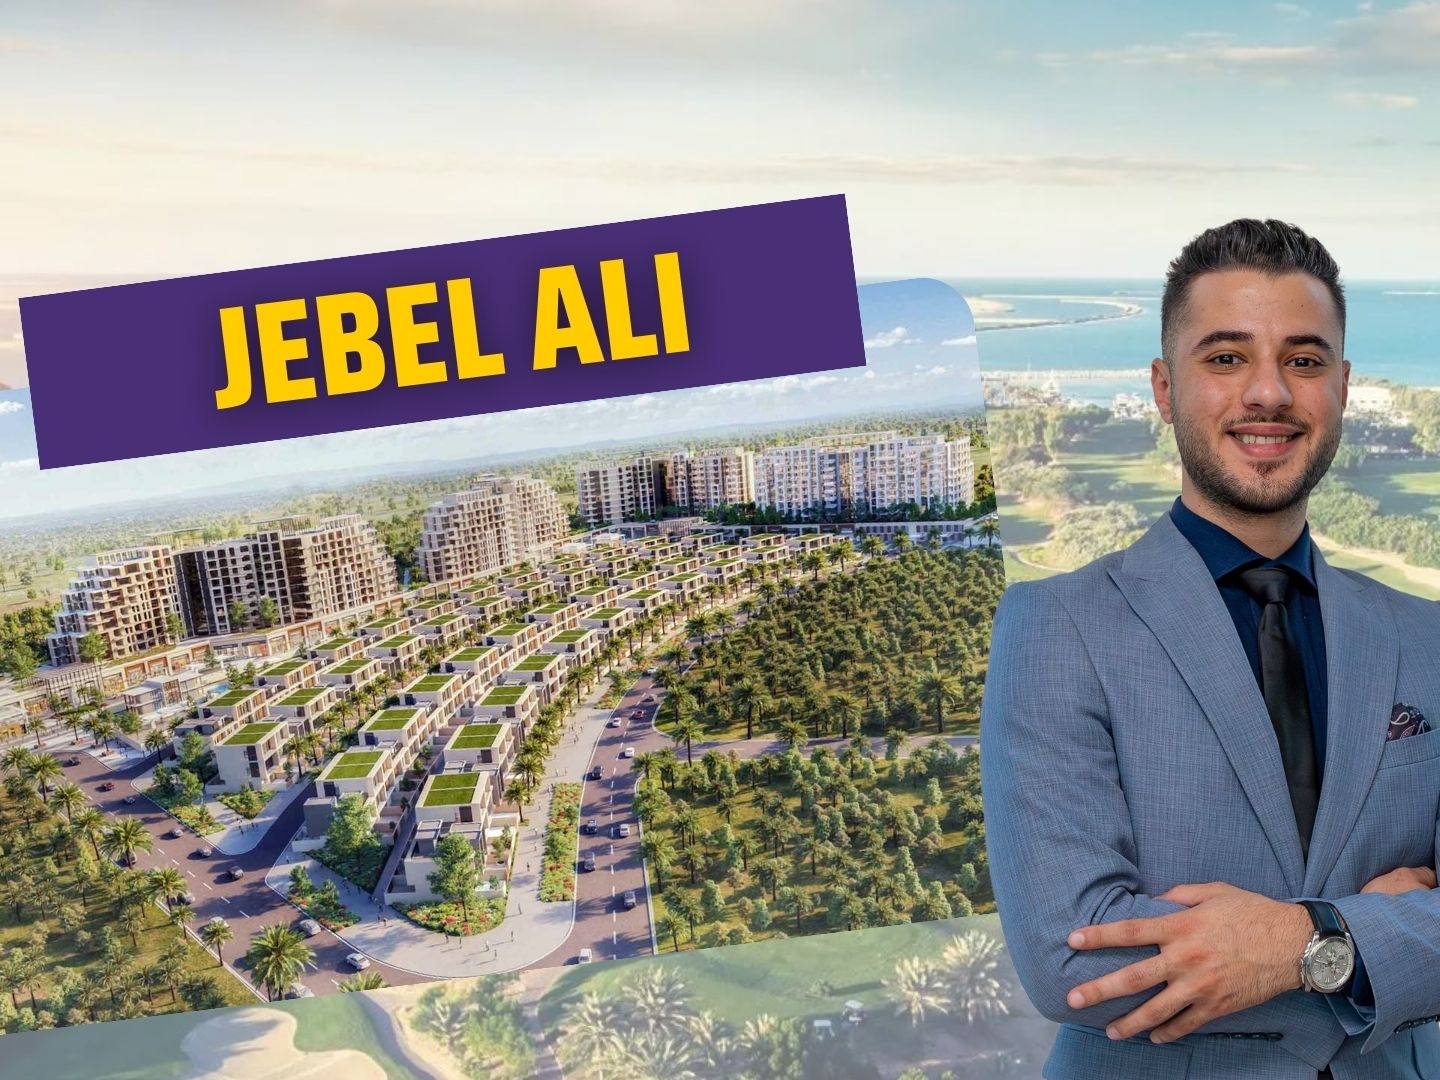 Jebel Ali